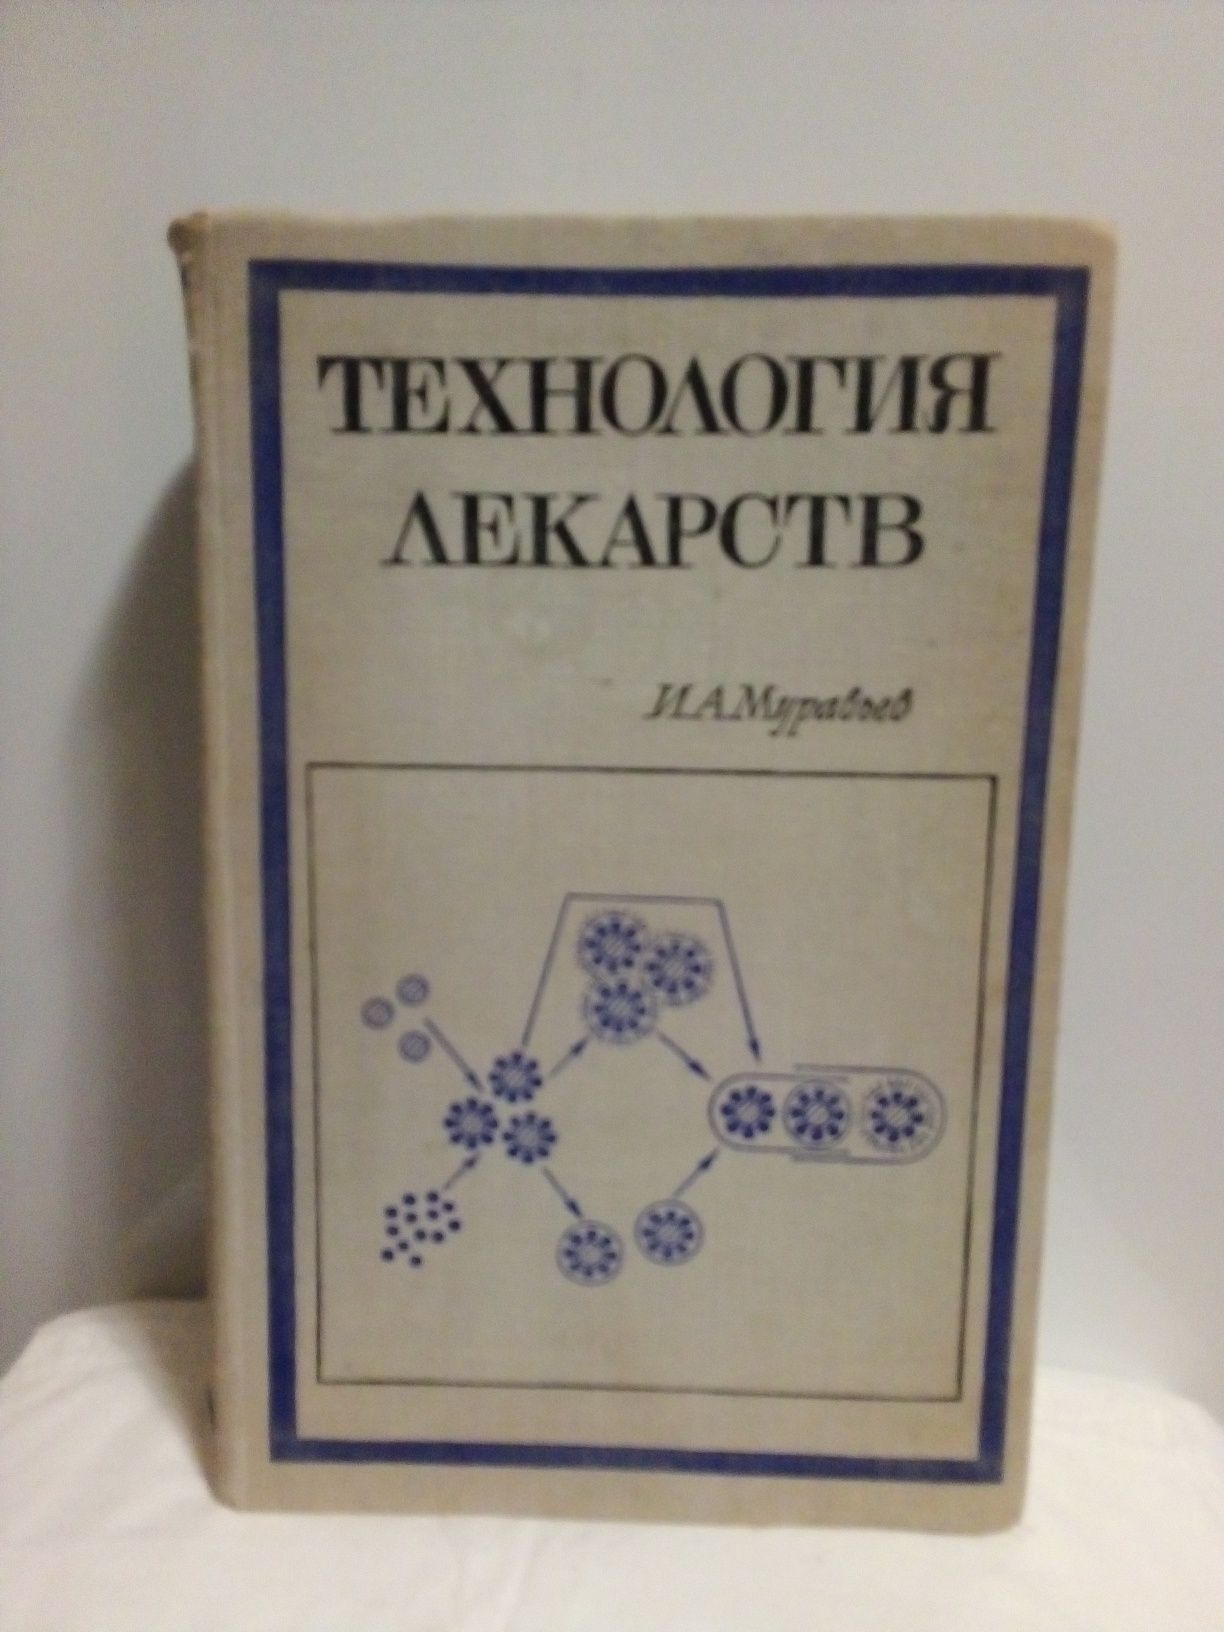 Книга  И. А. Муравьёв "Технология лекарств". 1971 год.